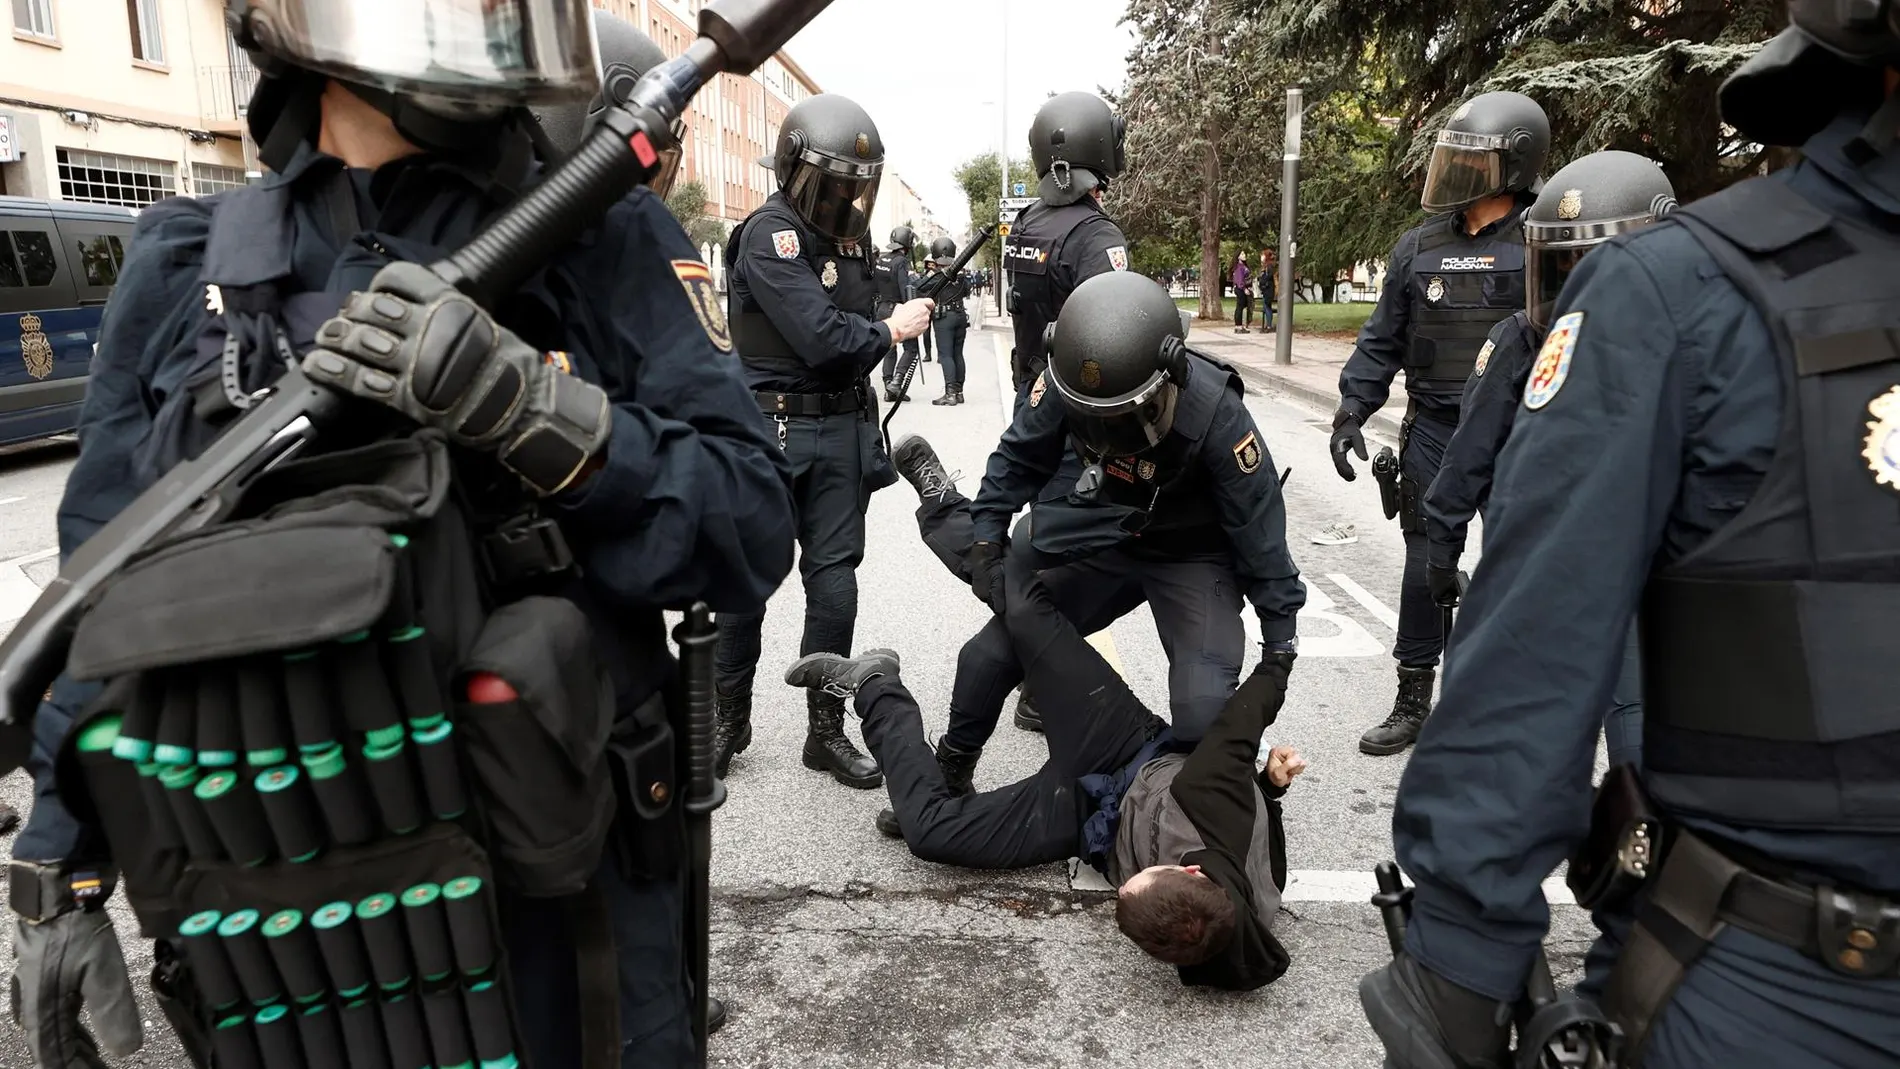 Los altercados de Pamplona dejan 6 detenidos y 4 policías municipales heridos